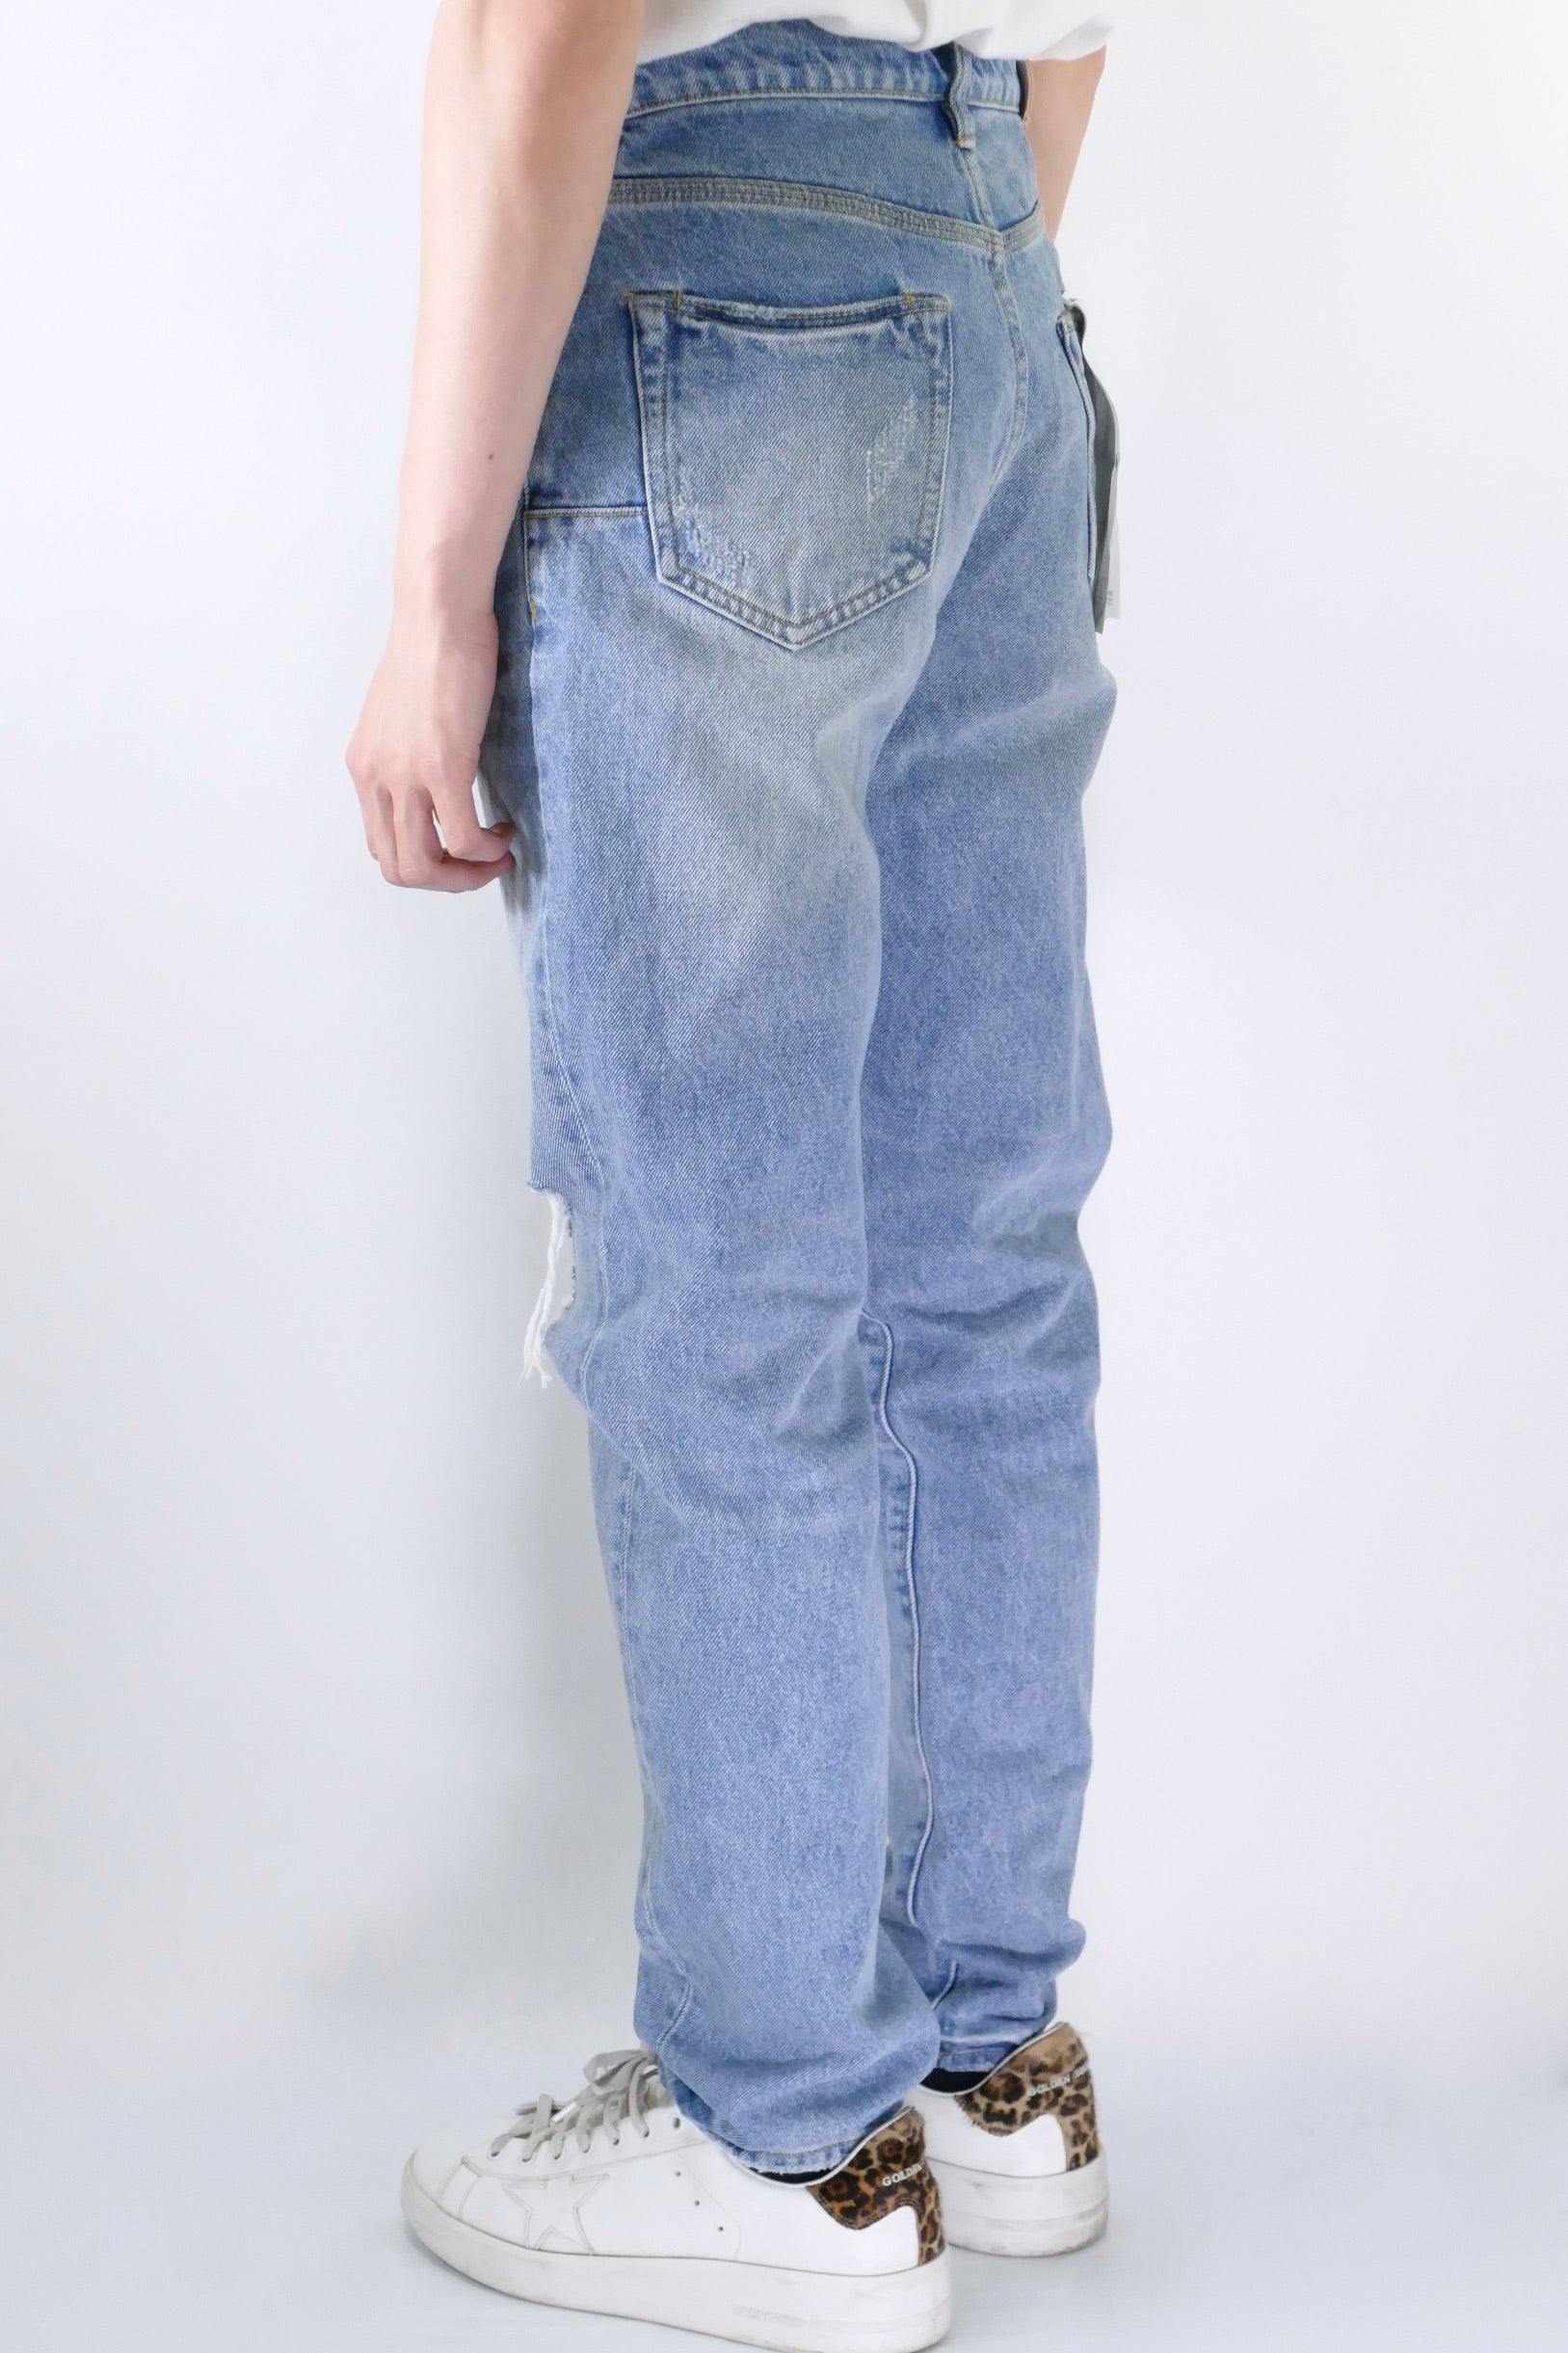 Buy PURPLE BRAND Vintage Blowout Jeans 'Light Indigo Vintage Blowout' -  P005 VBLI423